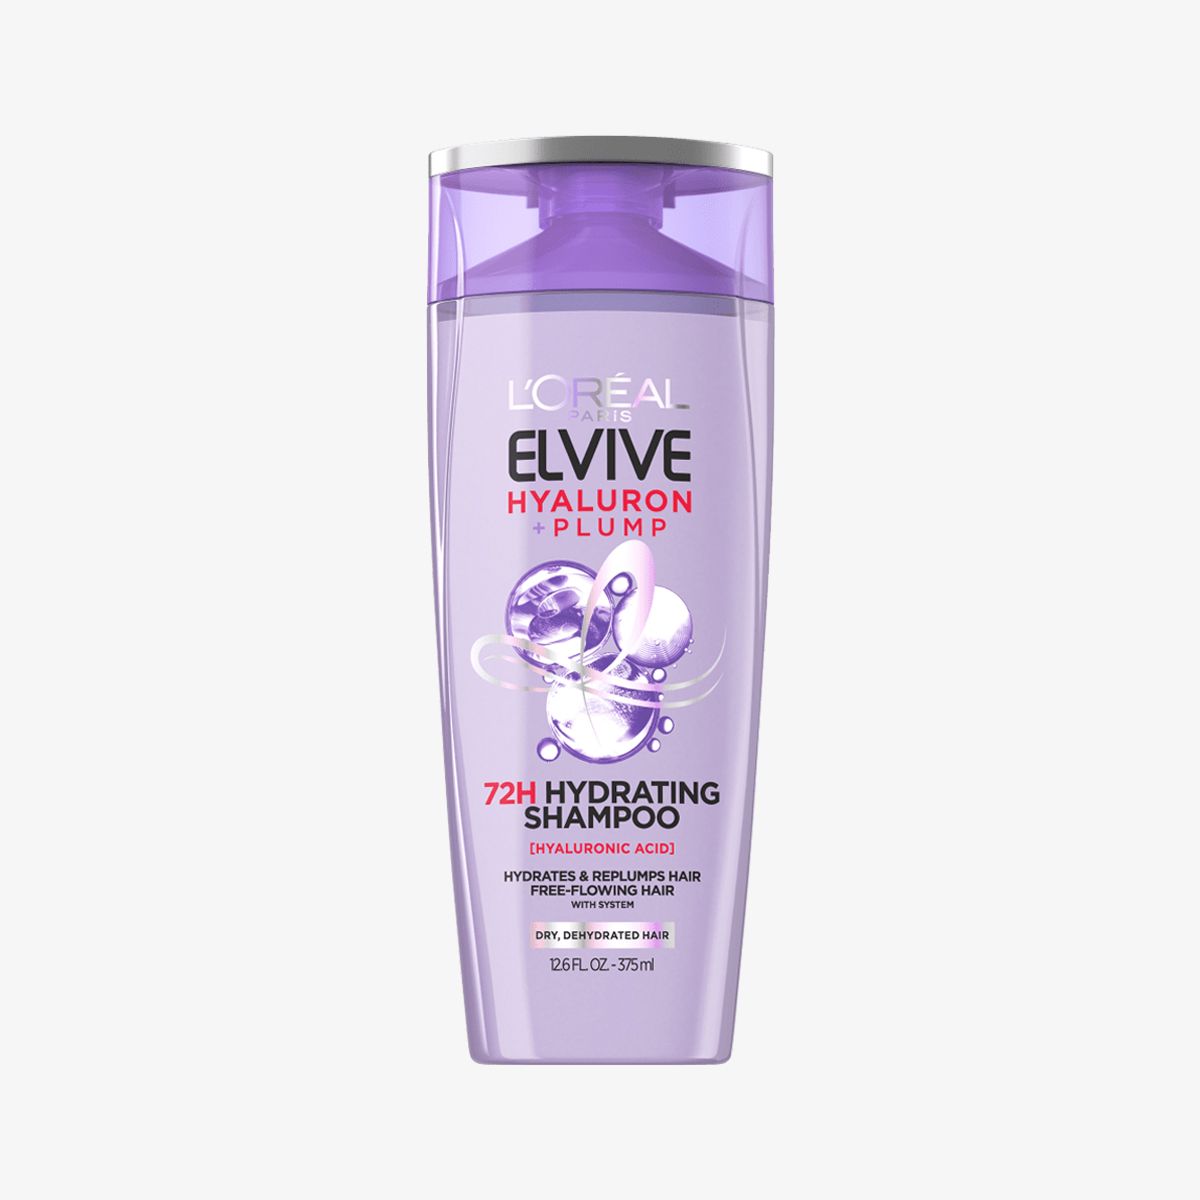 L’Oréal Paris Elvive Hyaluron + Plump Hydrating Shampoo, Paraben-Free